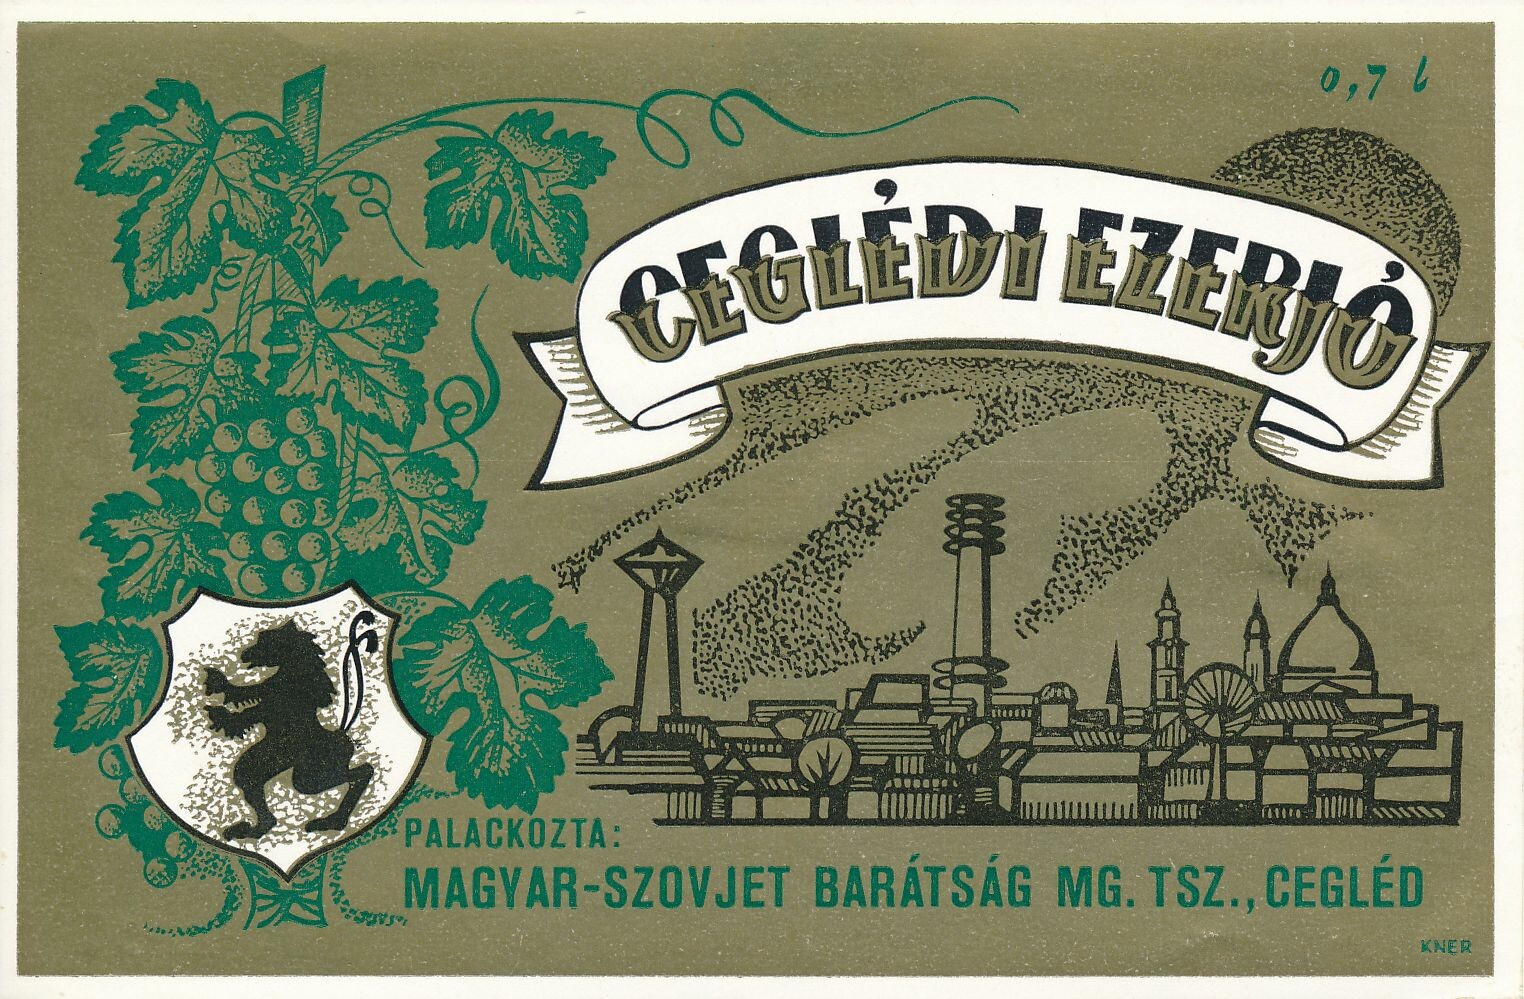 Ezerjó borcímke (Magyar Kereskedelmi és Vendéglátóipari Múzeum CC BY-NC-SA)